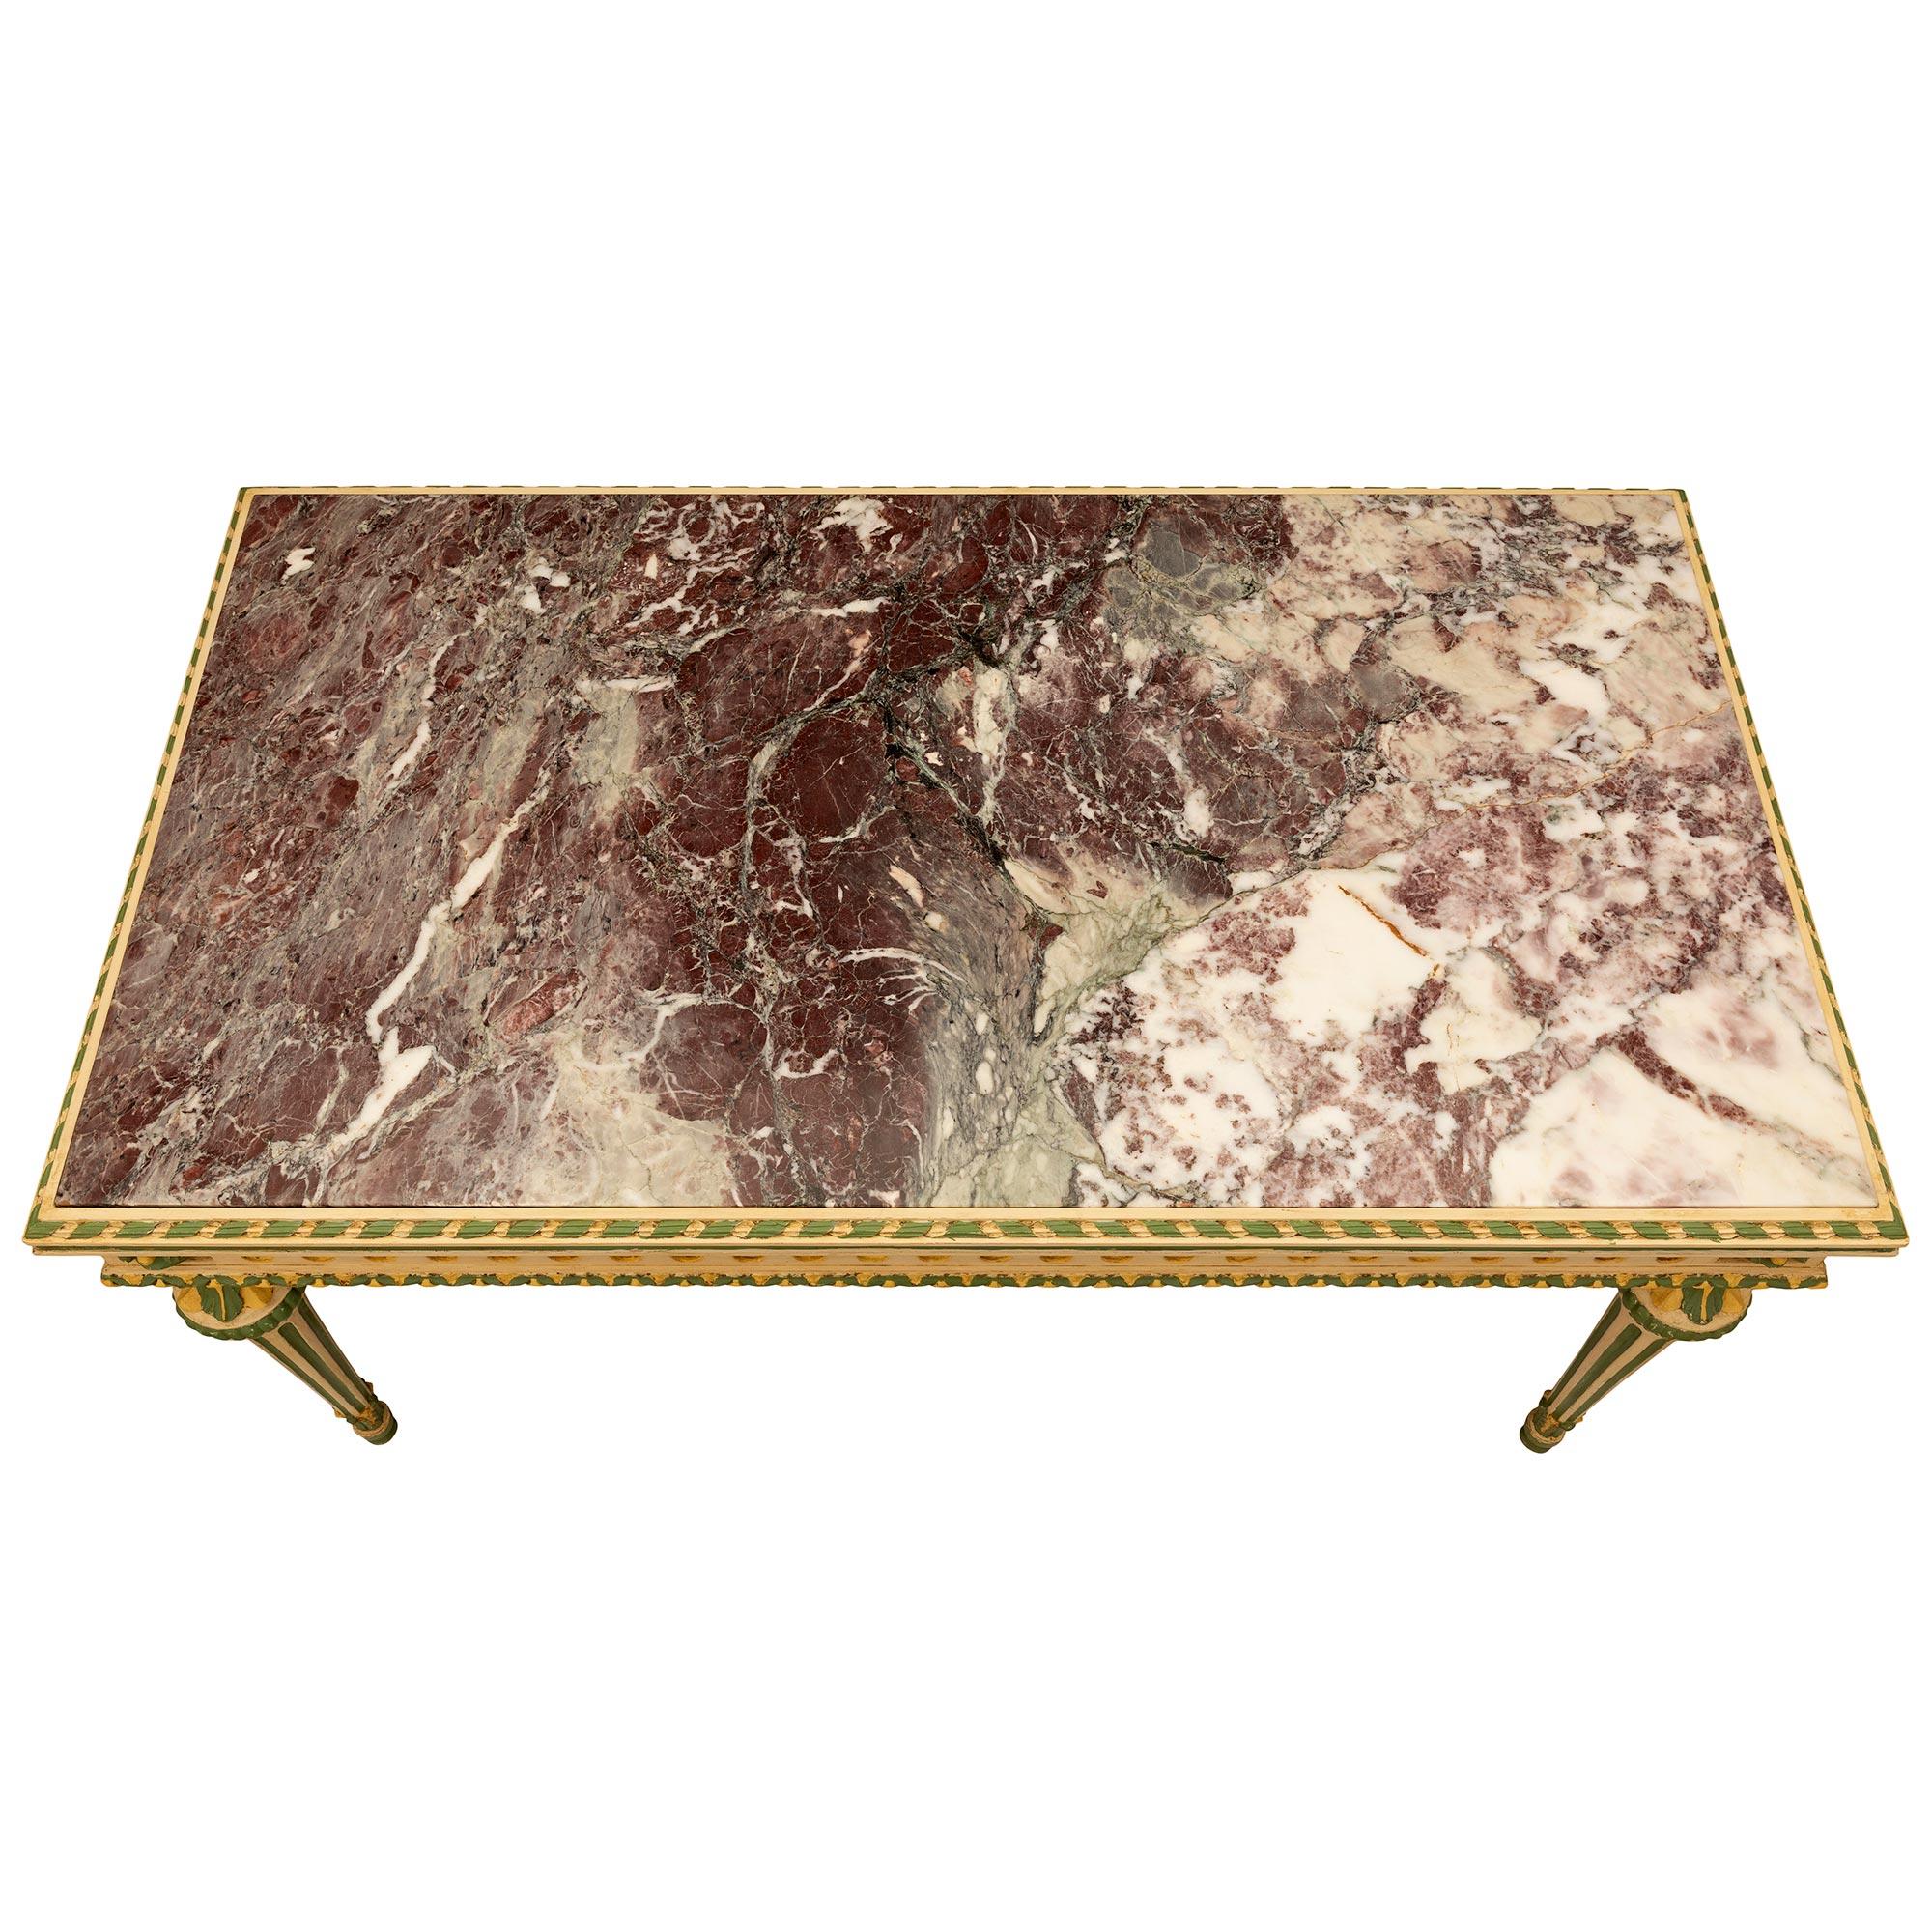 Une belle et très unique table de centre en bois patiné et marbre Brèche Violette d'un style Louis XVI du 19ème siècle. La table rectangulaire est surélevée par d'élégants pieds circulaires fuselés et cannelés, avec des pieds en forme de topie, avec